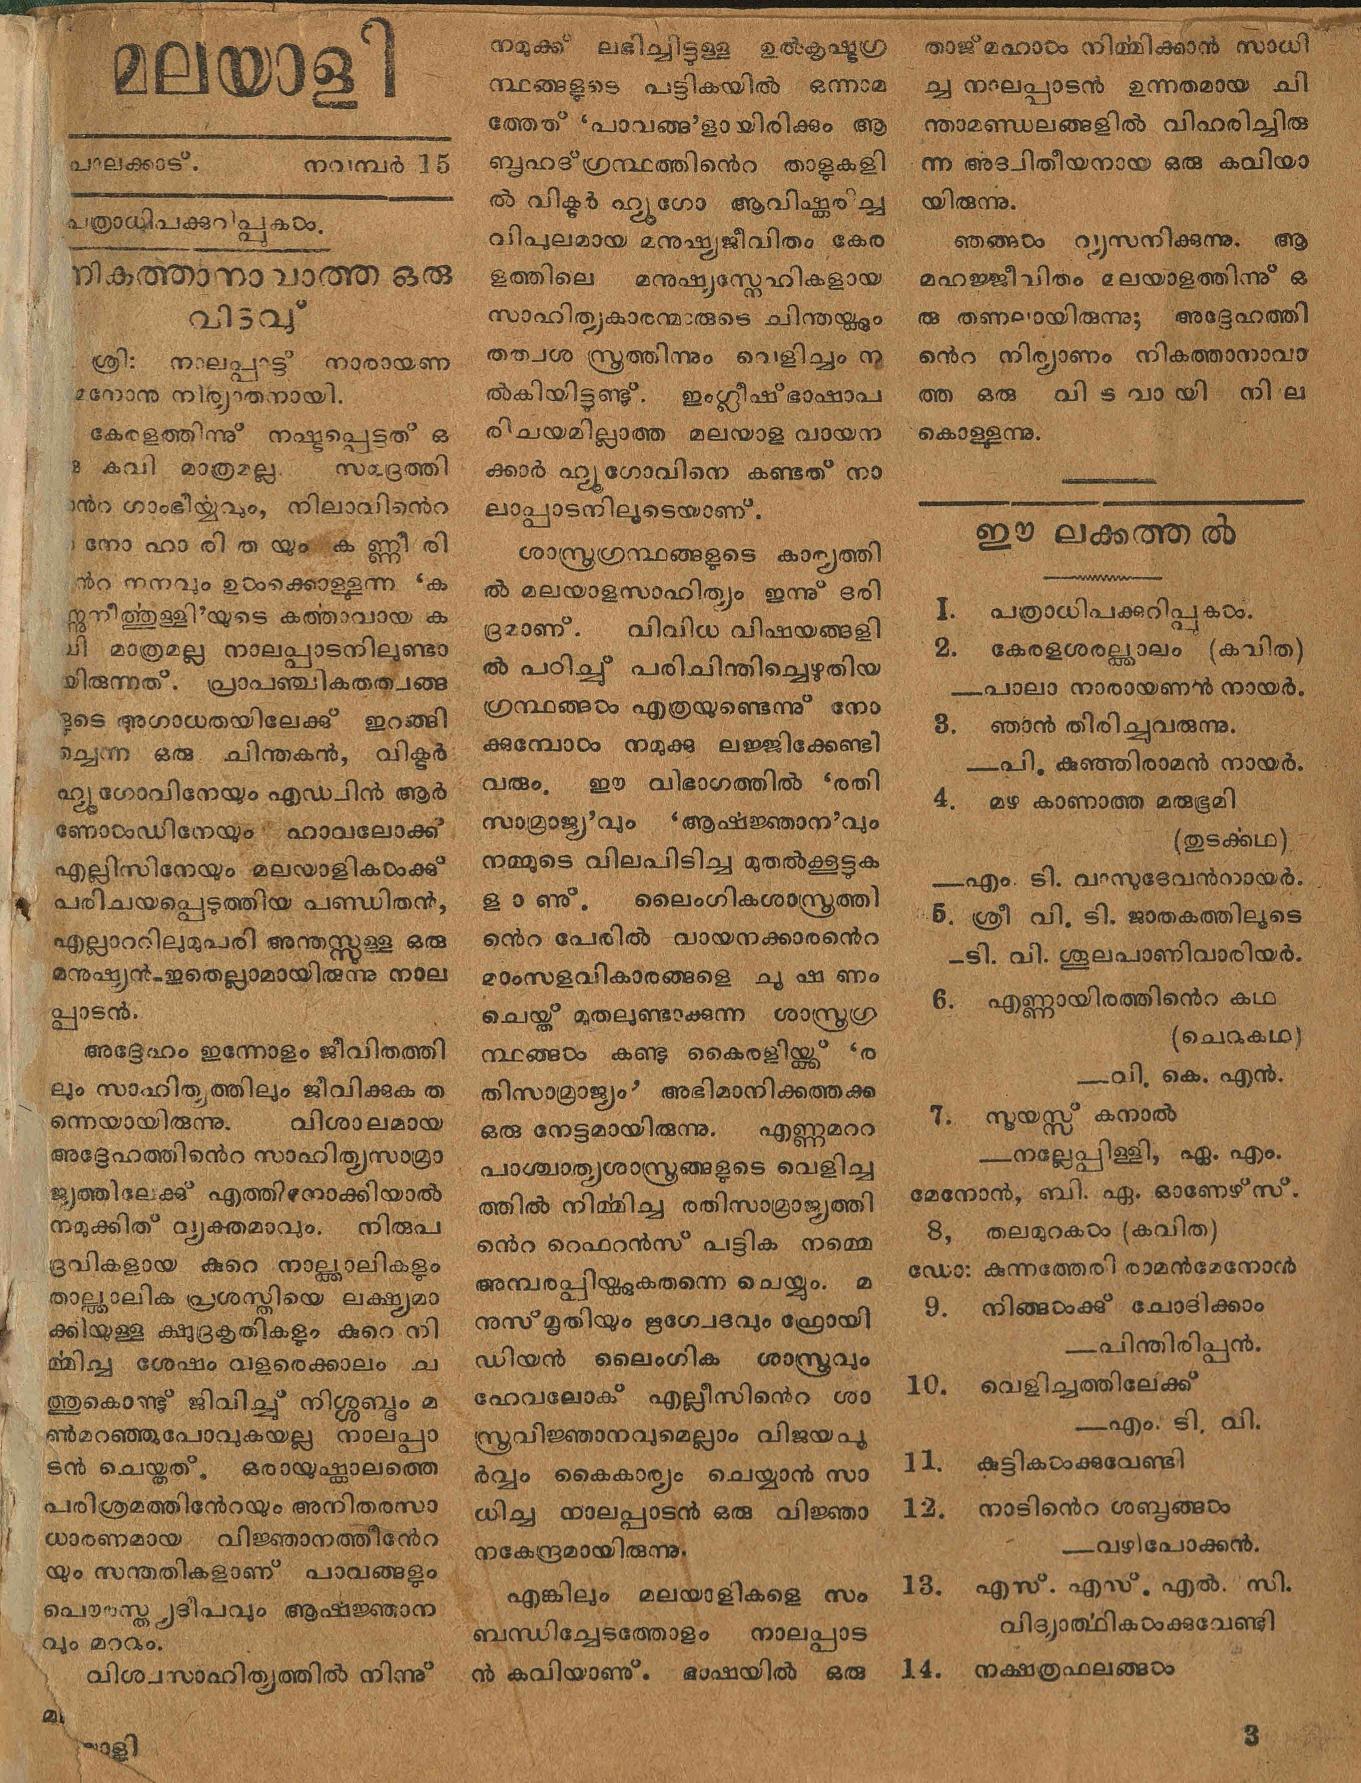  1954 - മലയാളി പ്രതിപക്ഷപത്രം രണ്ടു ലക്കങ്ങൾ